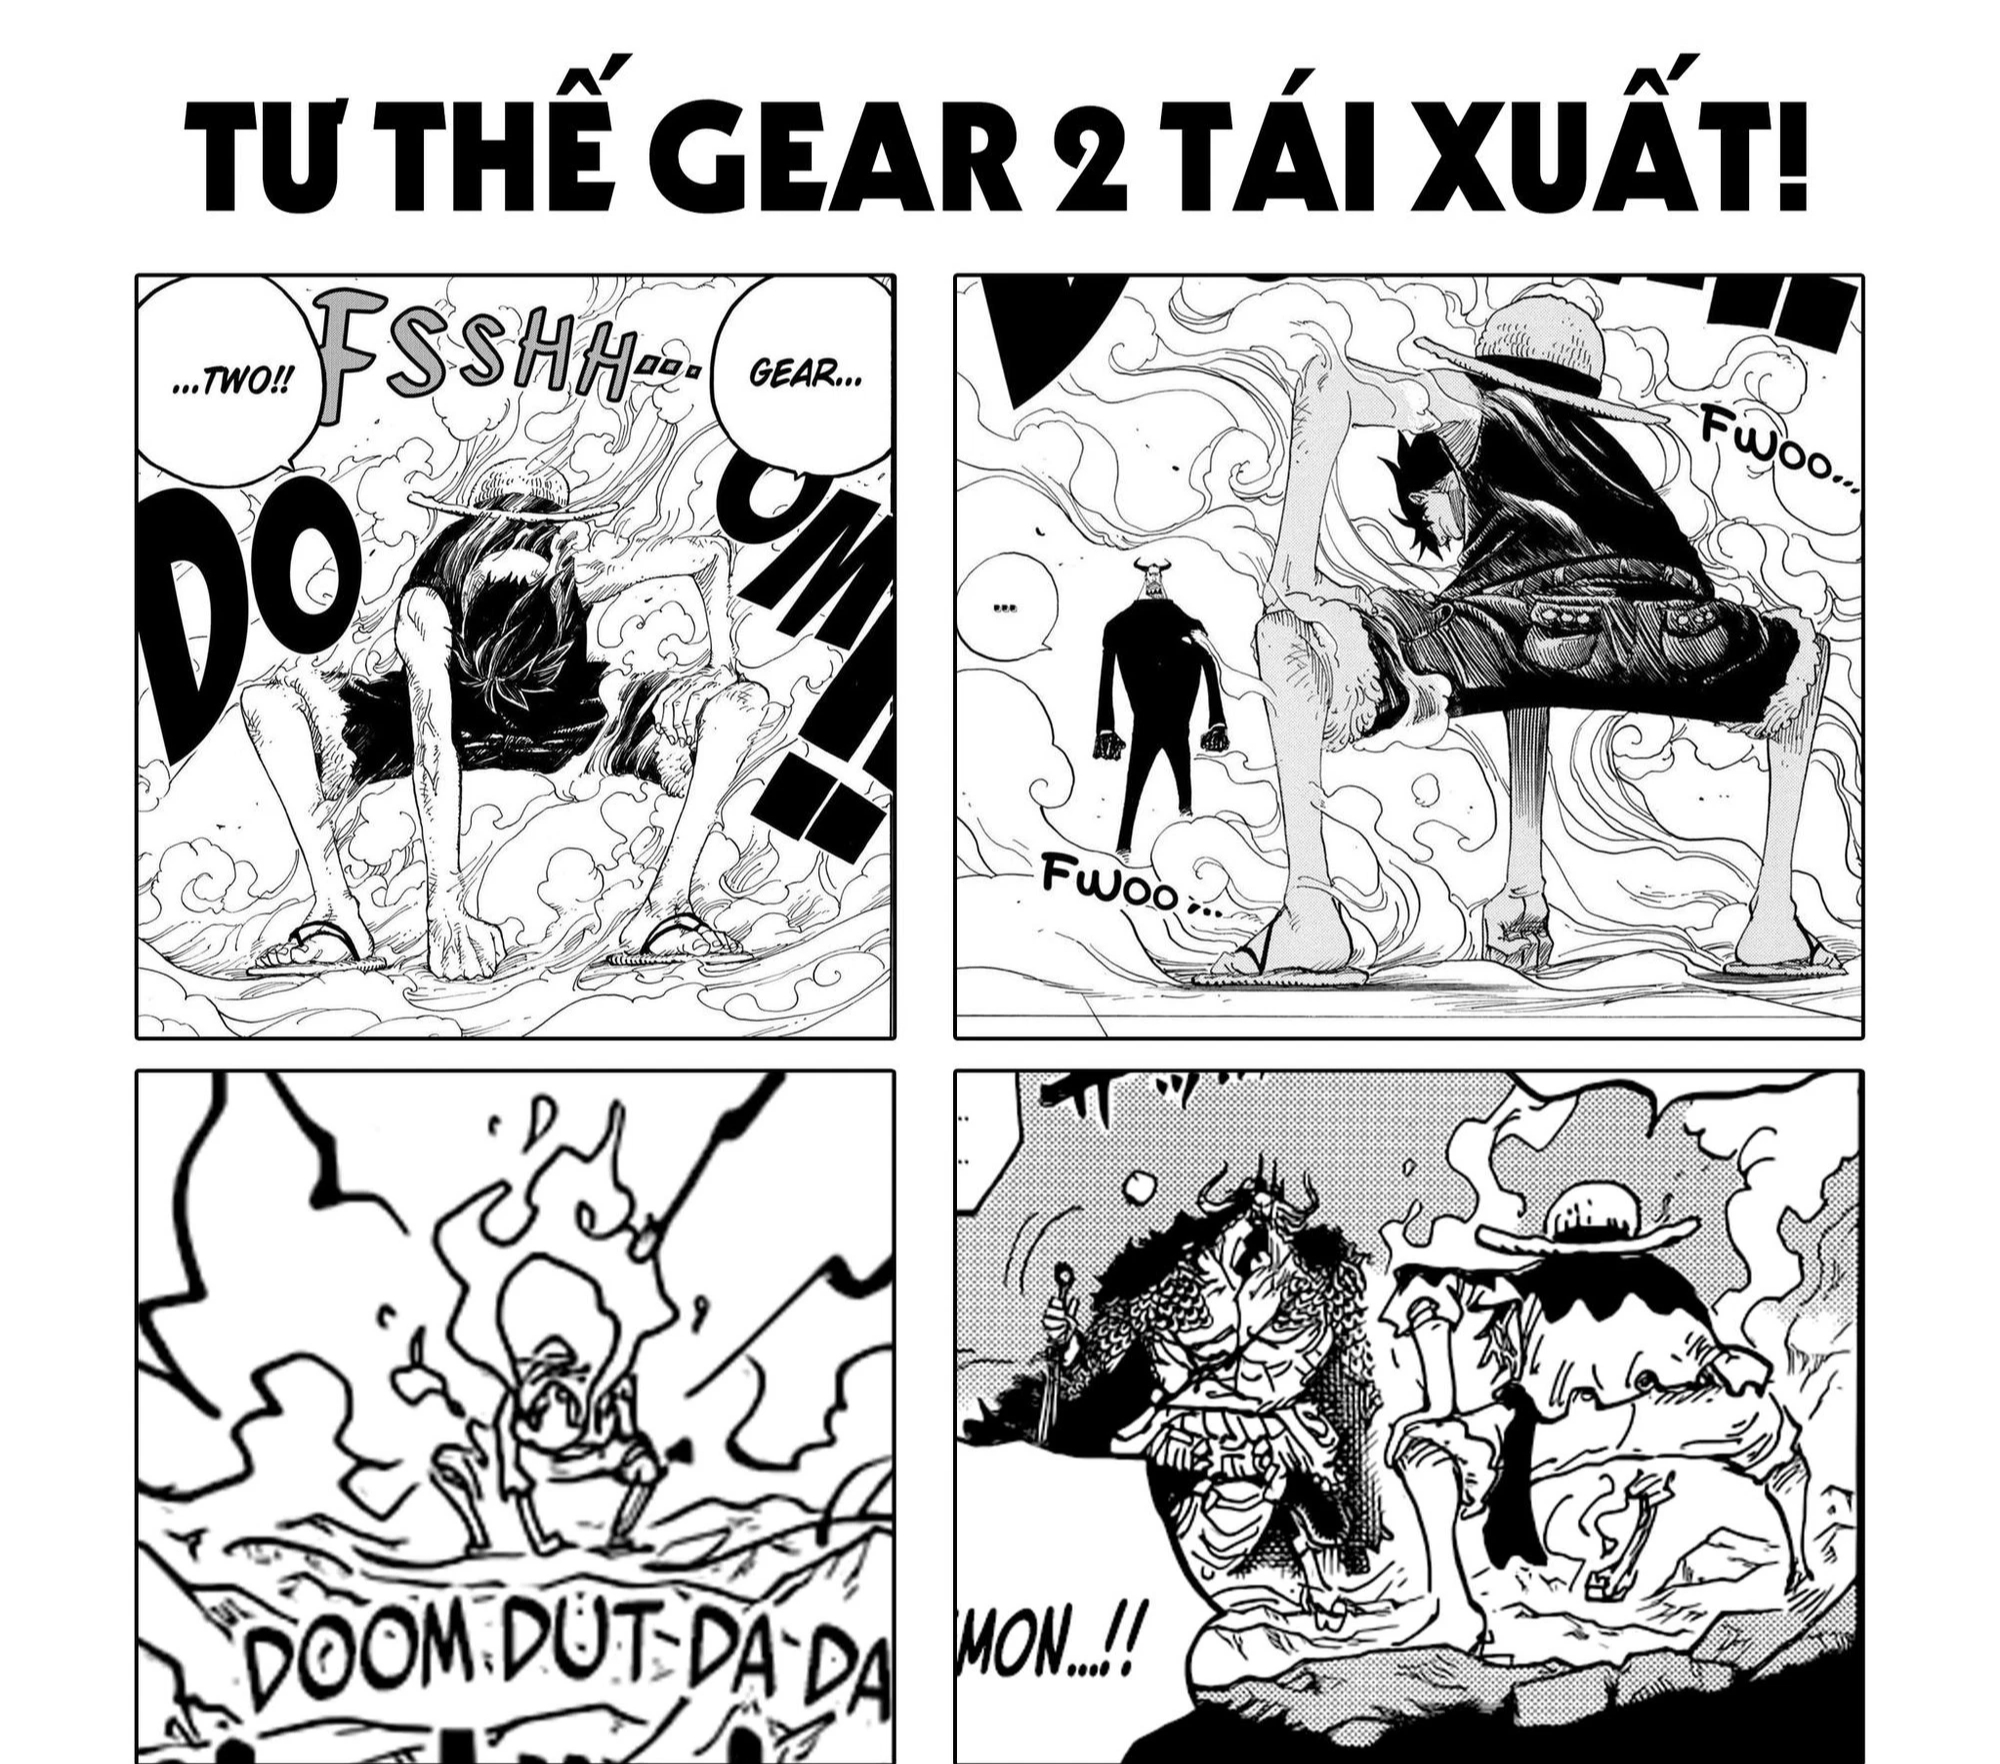 Gear 2 của One Piece - Gear 2 là một kỹ thuật đặc biệt của Luffy trong One Piece, mang lại sức mạnh vô cùng khủng khiếp. Hãy cùng chiêm ngưỡng hình ảnh đầy ấn tượng của Gear 2 khiến các fan One Piece không khỏi trầm trồ và phấn khích!